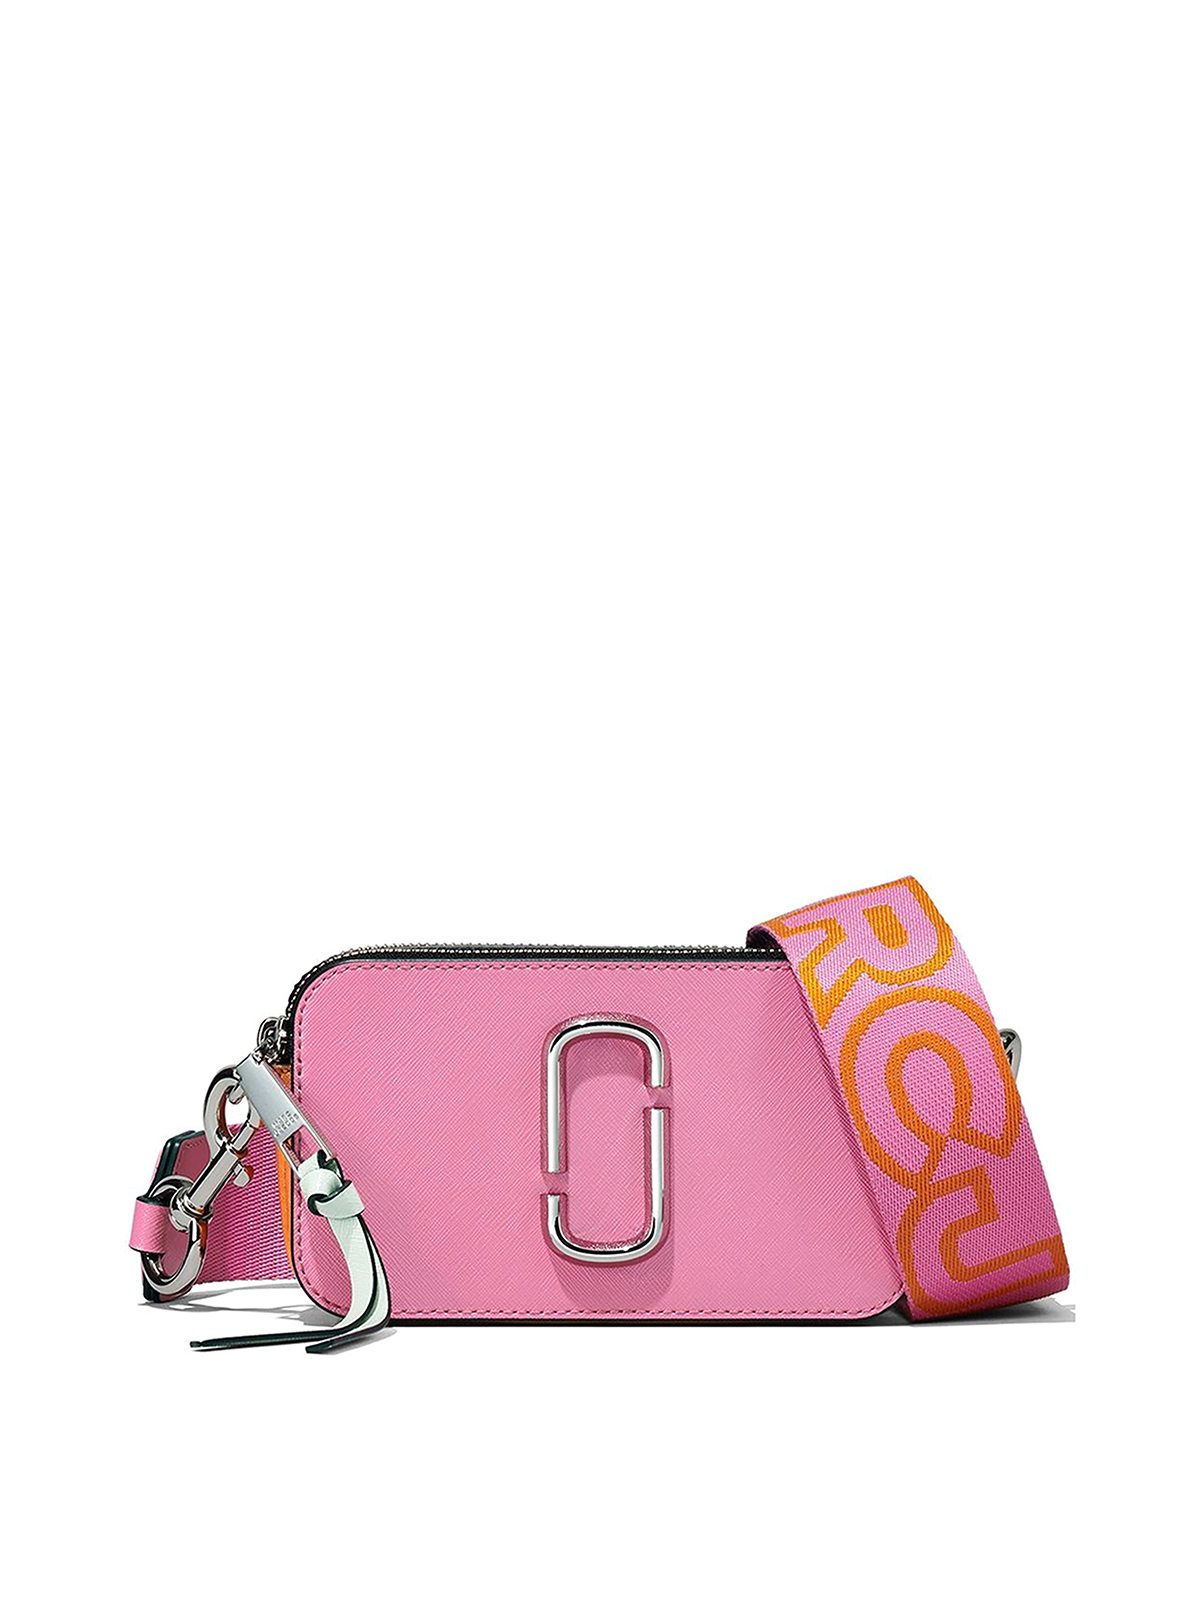 Marc Jacobs Crossbody Snapshot Shoulder Bag Leather Black/Pink Color